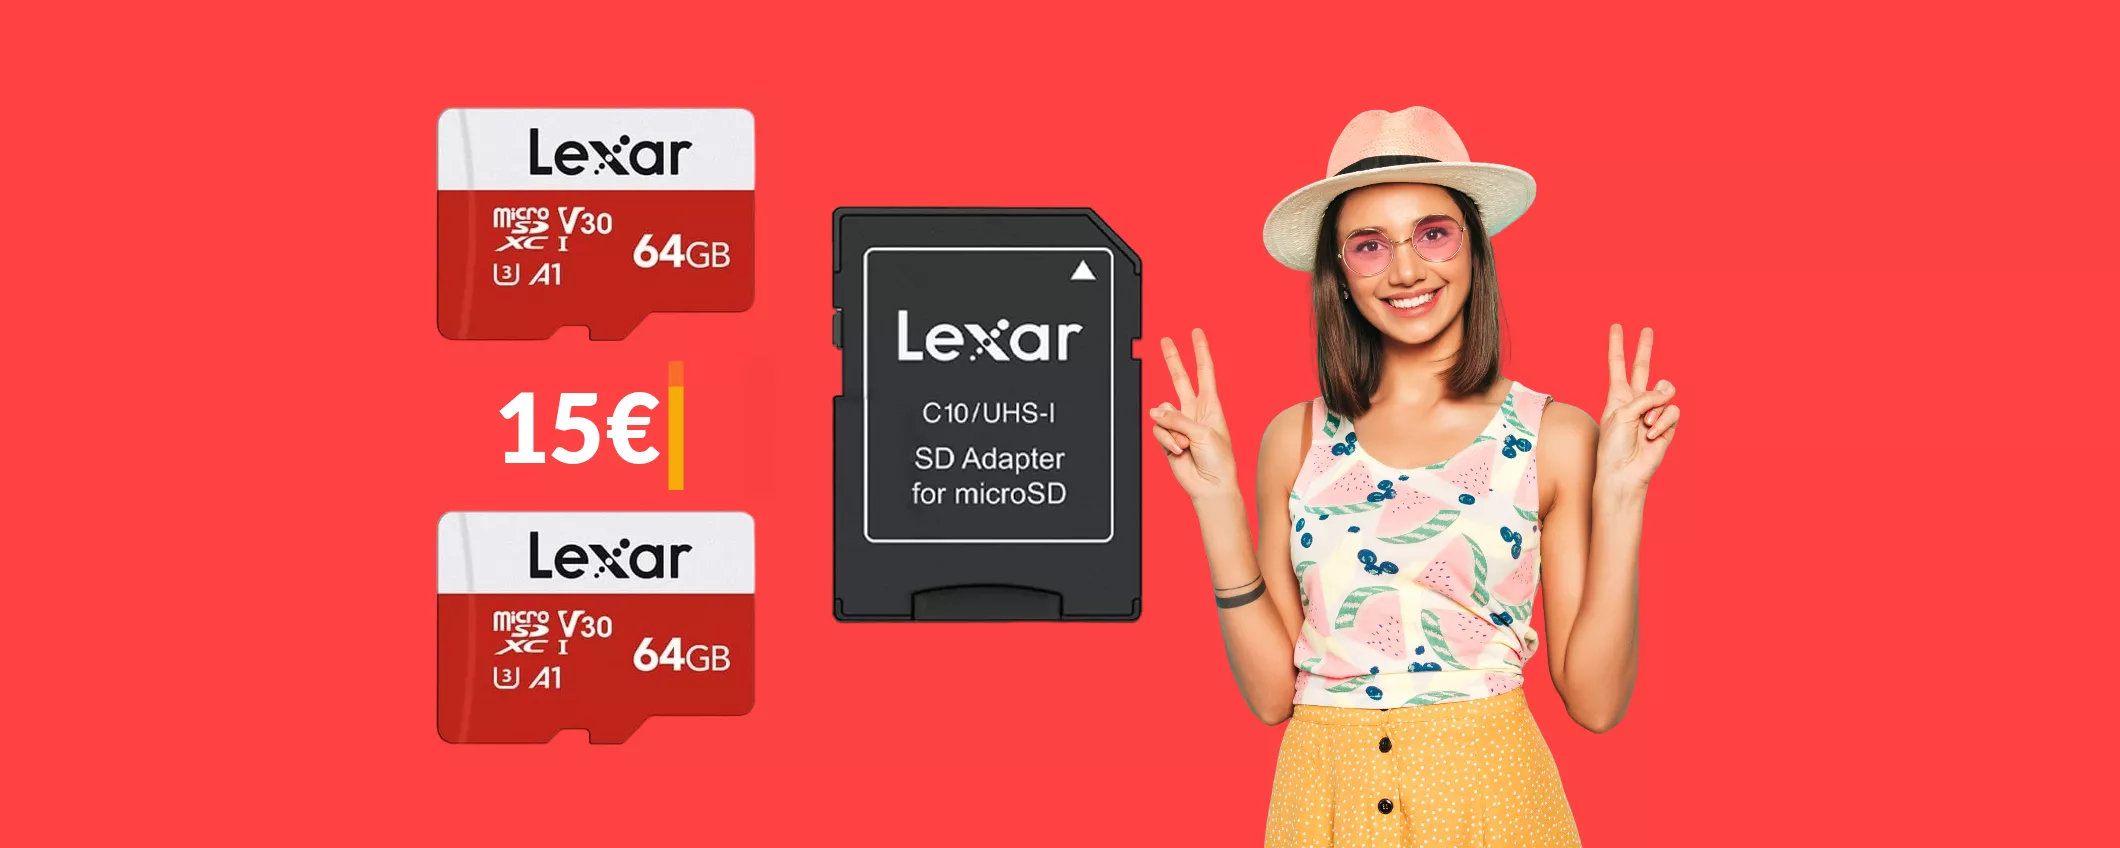 MicroSD 64GB Lexar: puoi averne DUE ad un prezzo di soli 15€